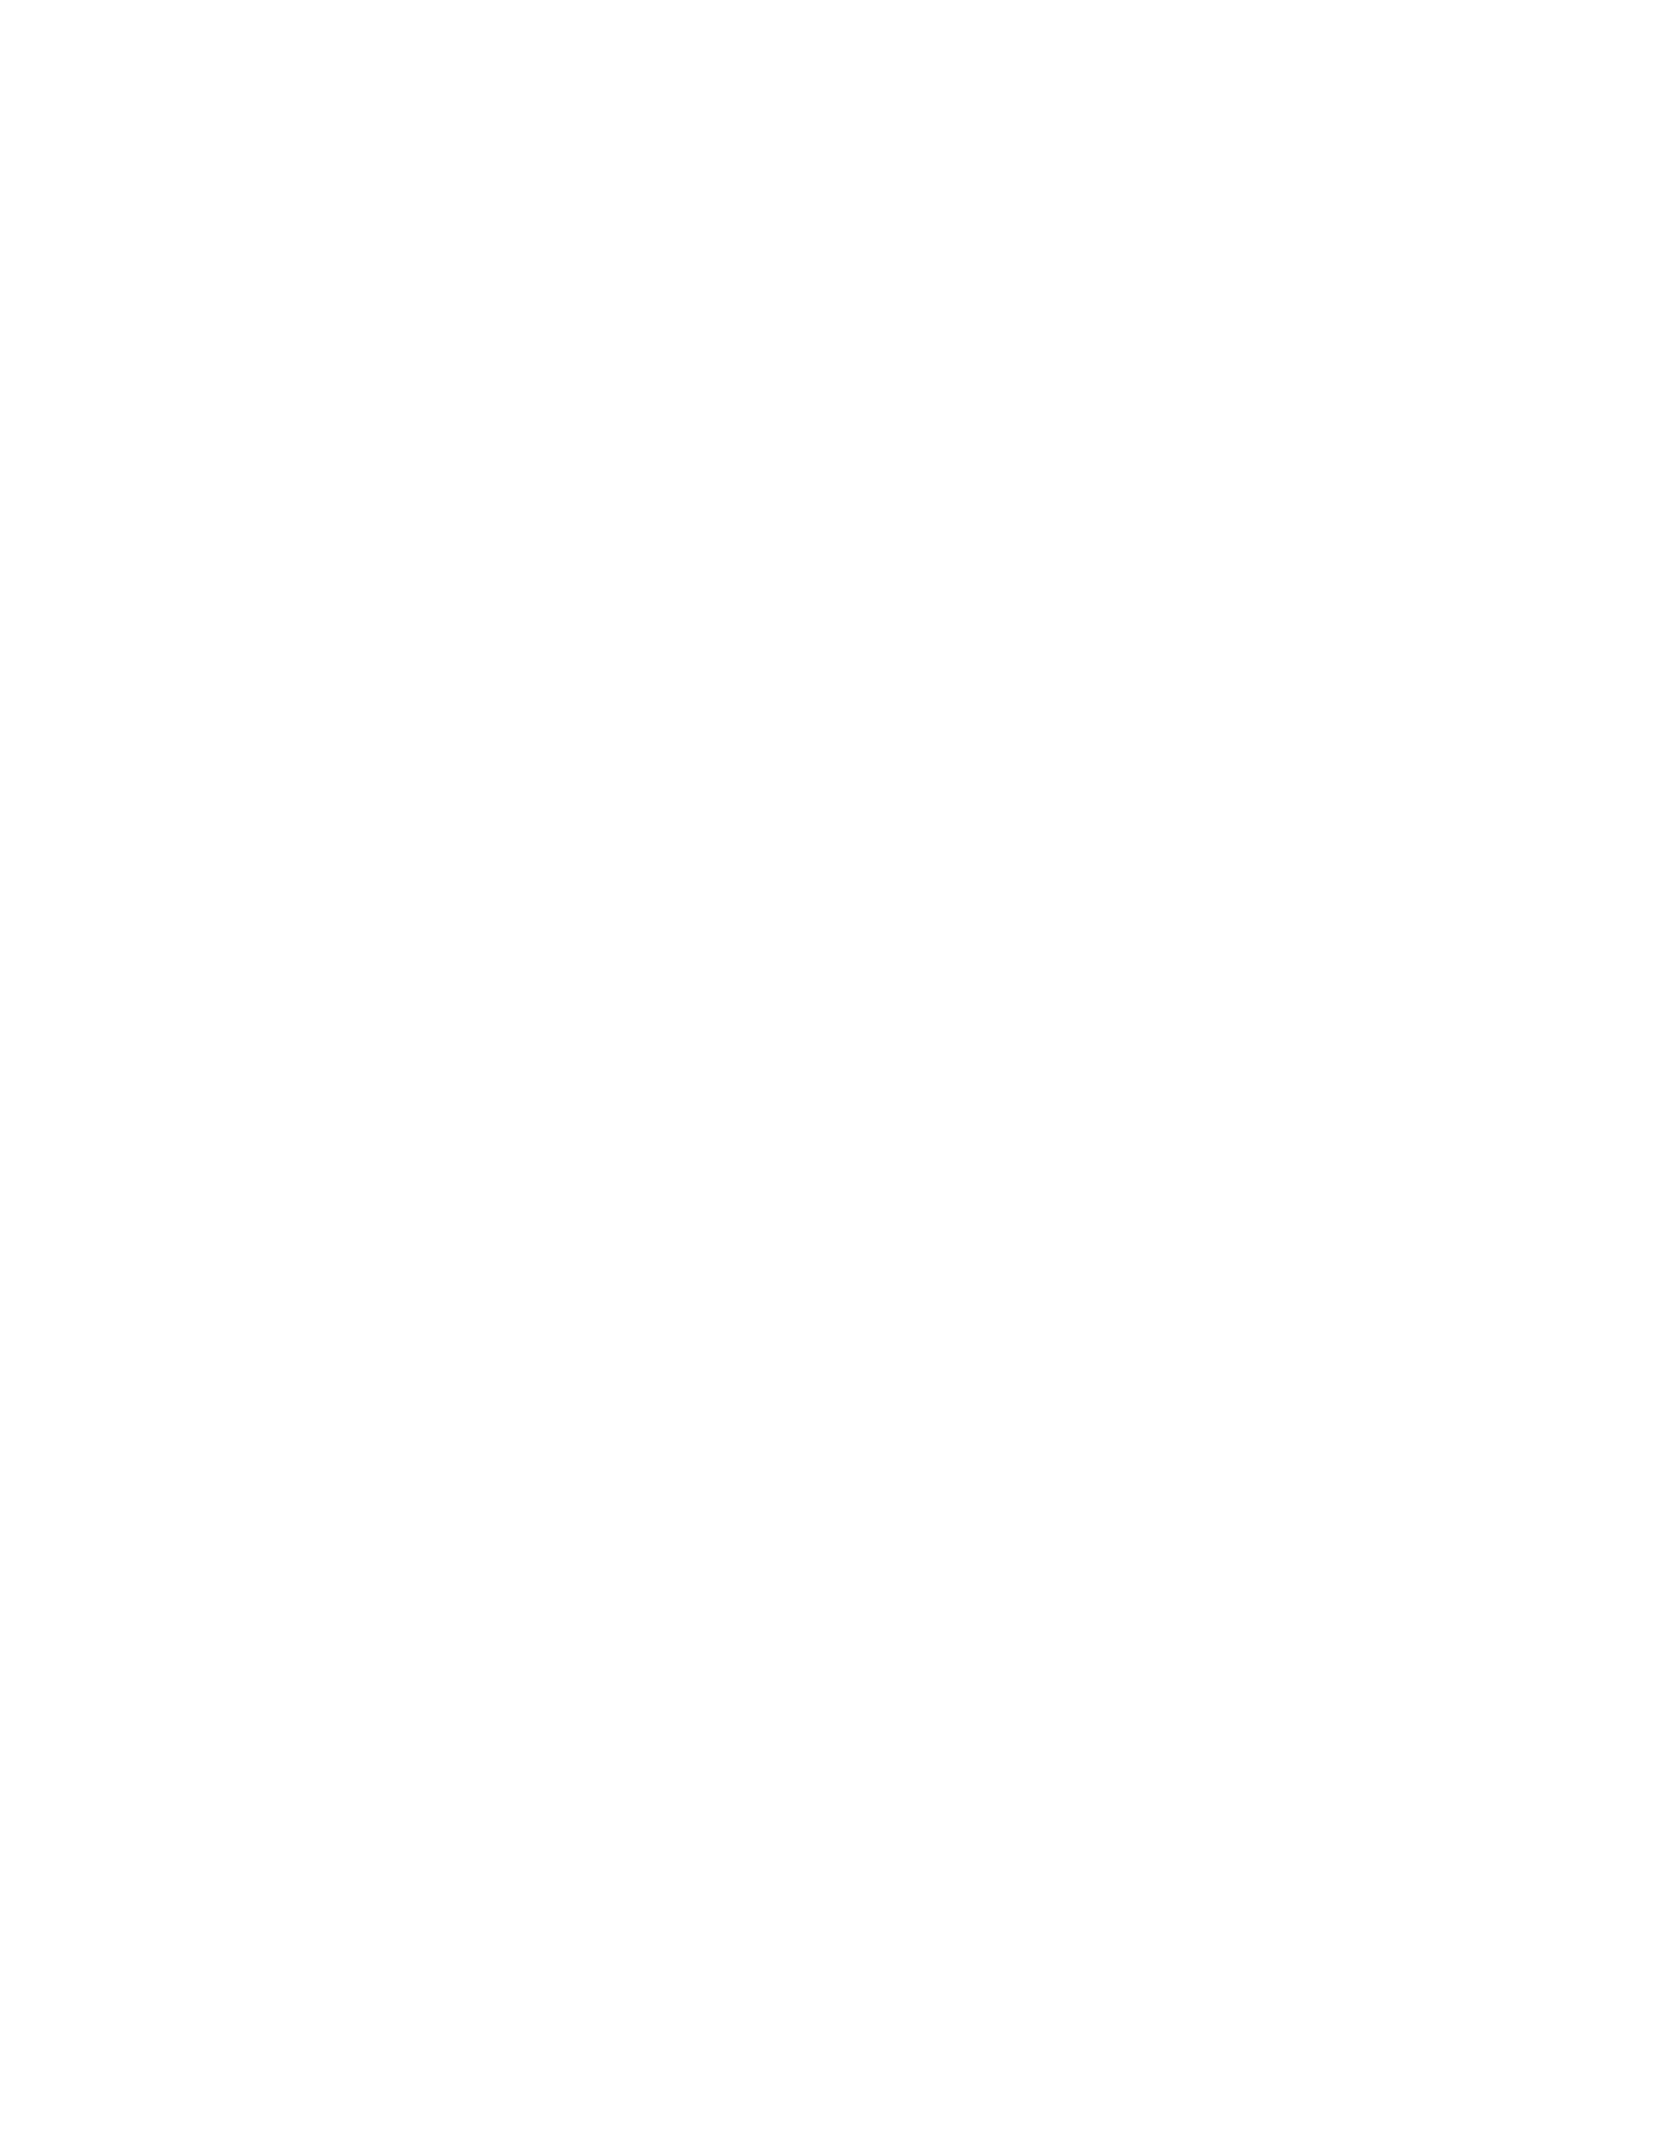 Зинаида Серебрякова. Портрет Екатерины Лансере. 1912. Государственный Русский музей, Санкт-Петербург